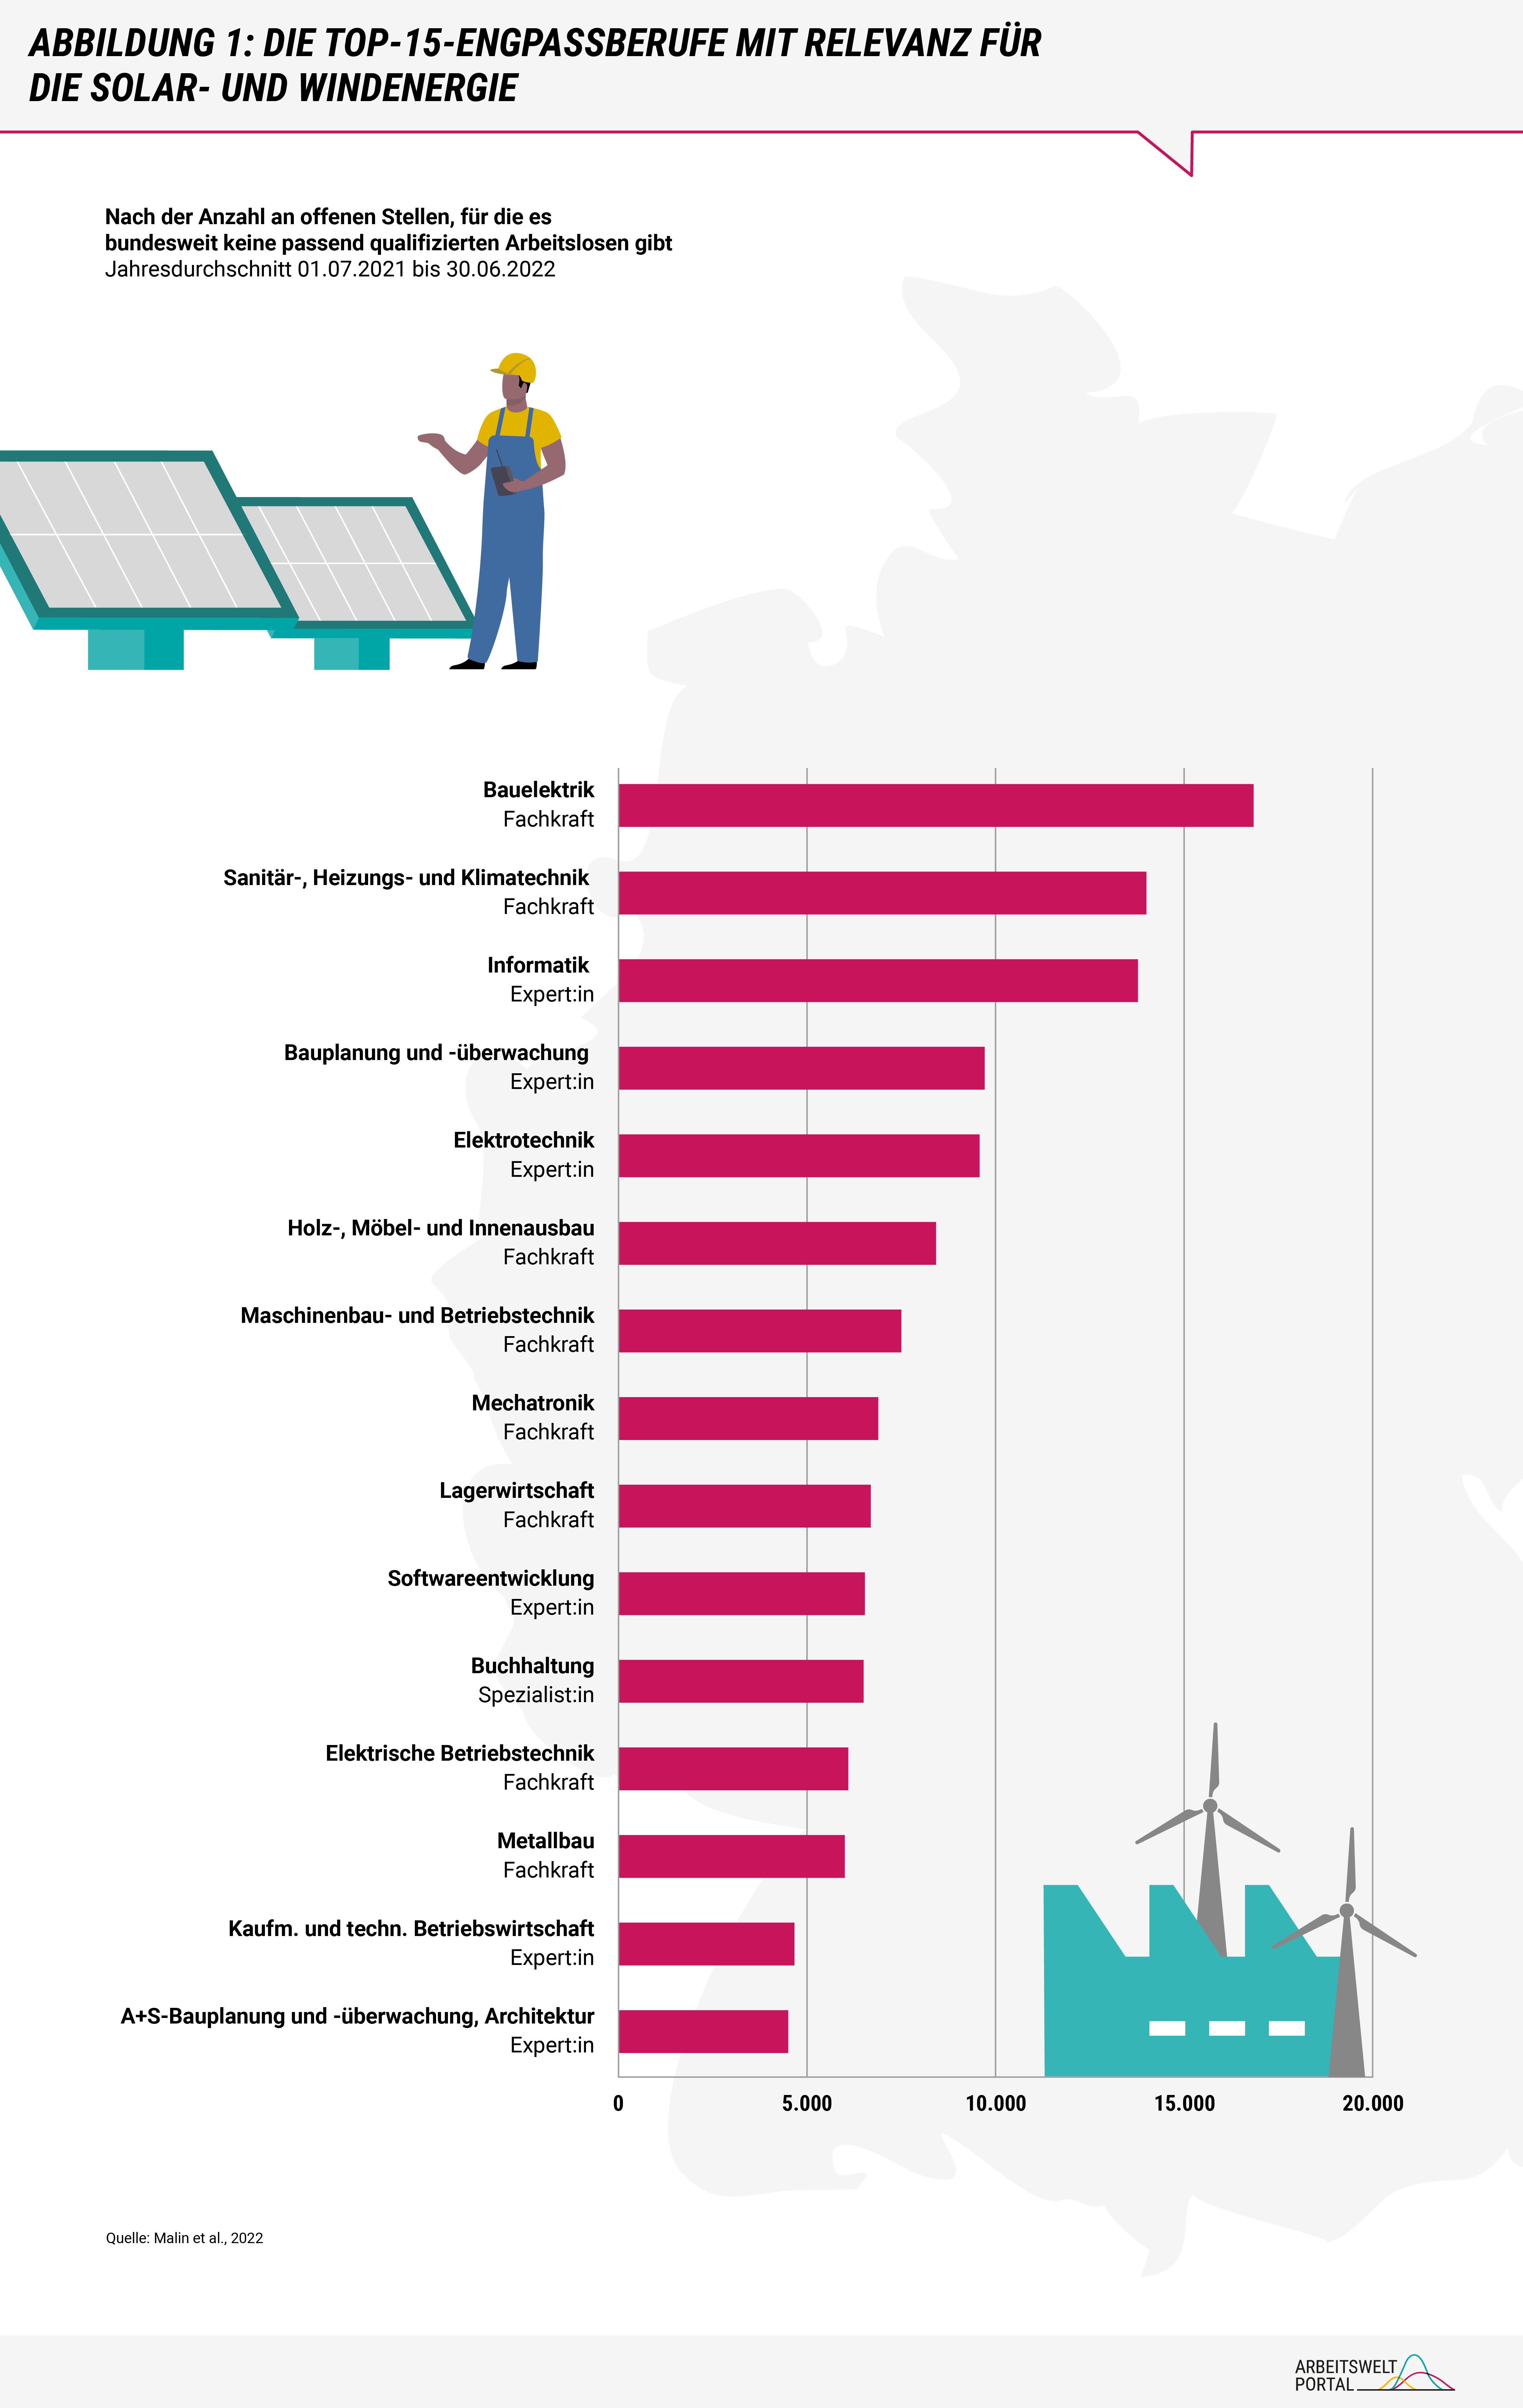 Das Balkendiagramm zeigt die an der Anzahl gemessen 15 größten Engpassberufe mit Relevanz für die Solar- und Windenergie. Ganz oben steht die Bauelektrik mit über 15 Tausend offenen Stellen, für die es bundesweit keine passend qualifizierten Arbeitslosen gibt.  